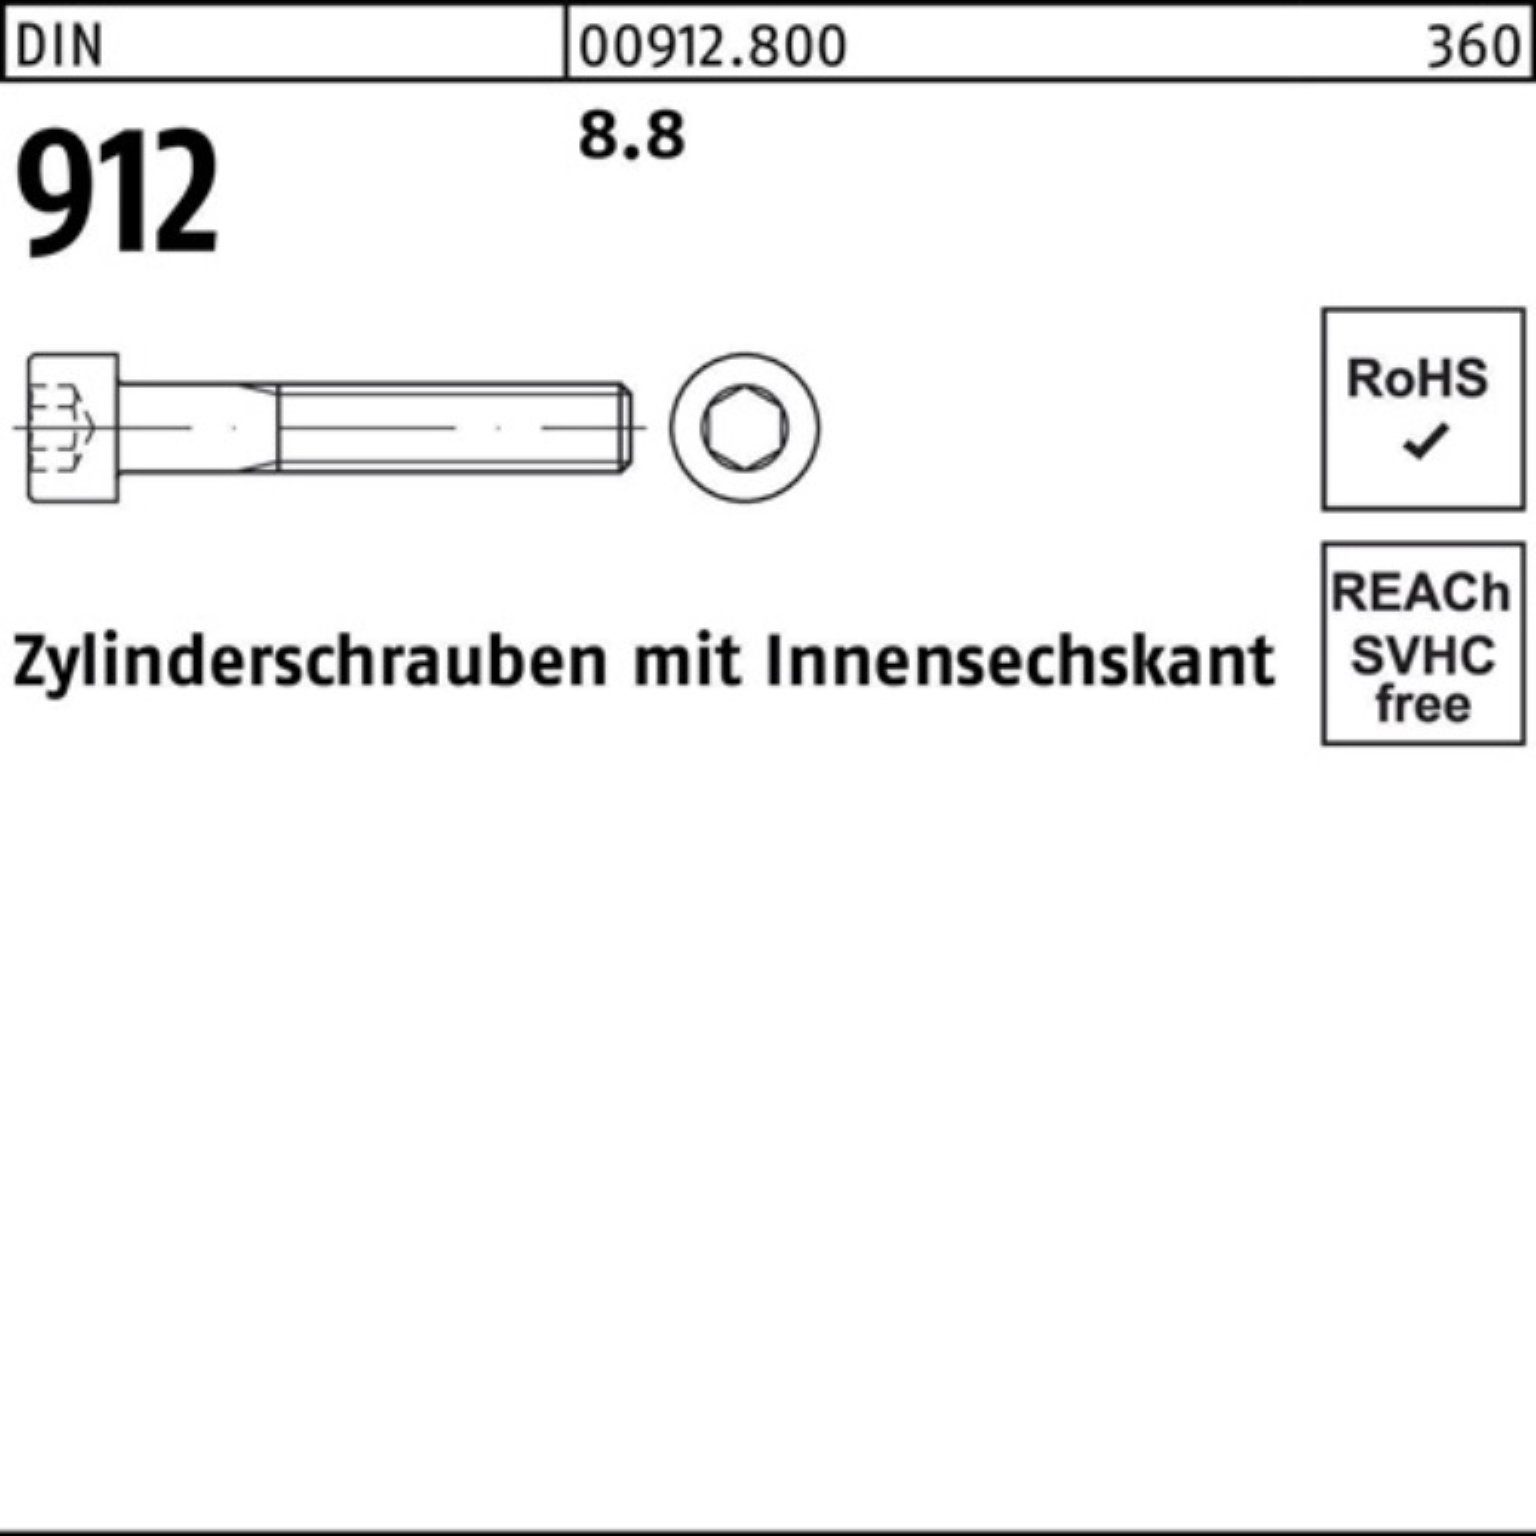 Zylinderschraube DI Stück Innen-6kt M30x 1 8.8 Reyher 230 100er Pack 912 DIN Zylinderschraube